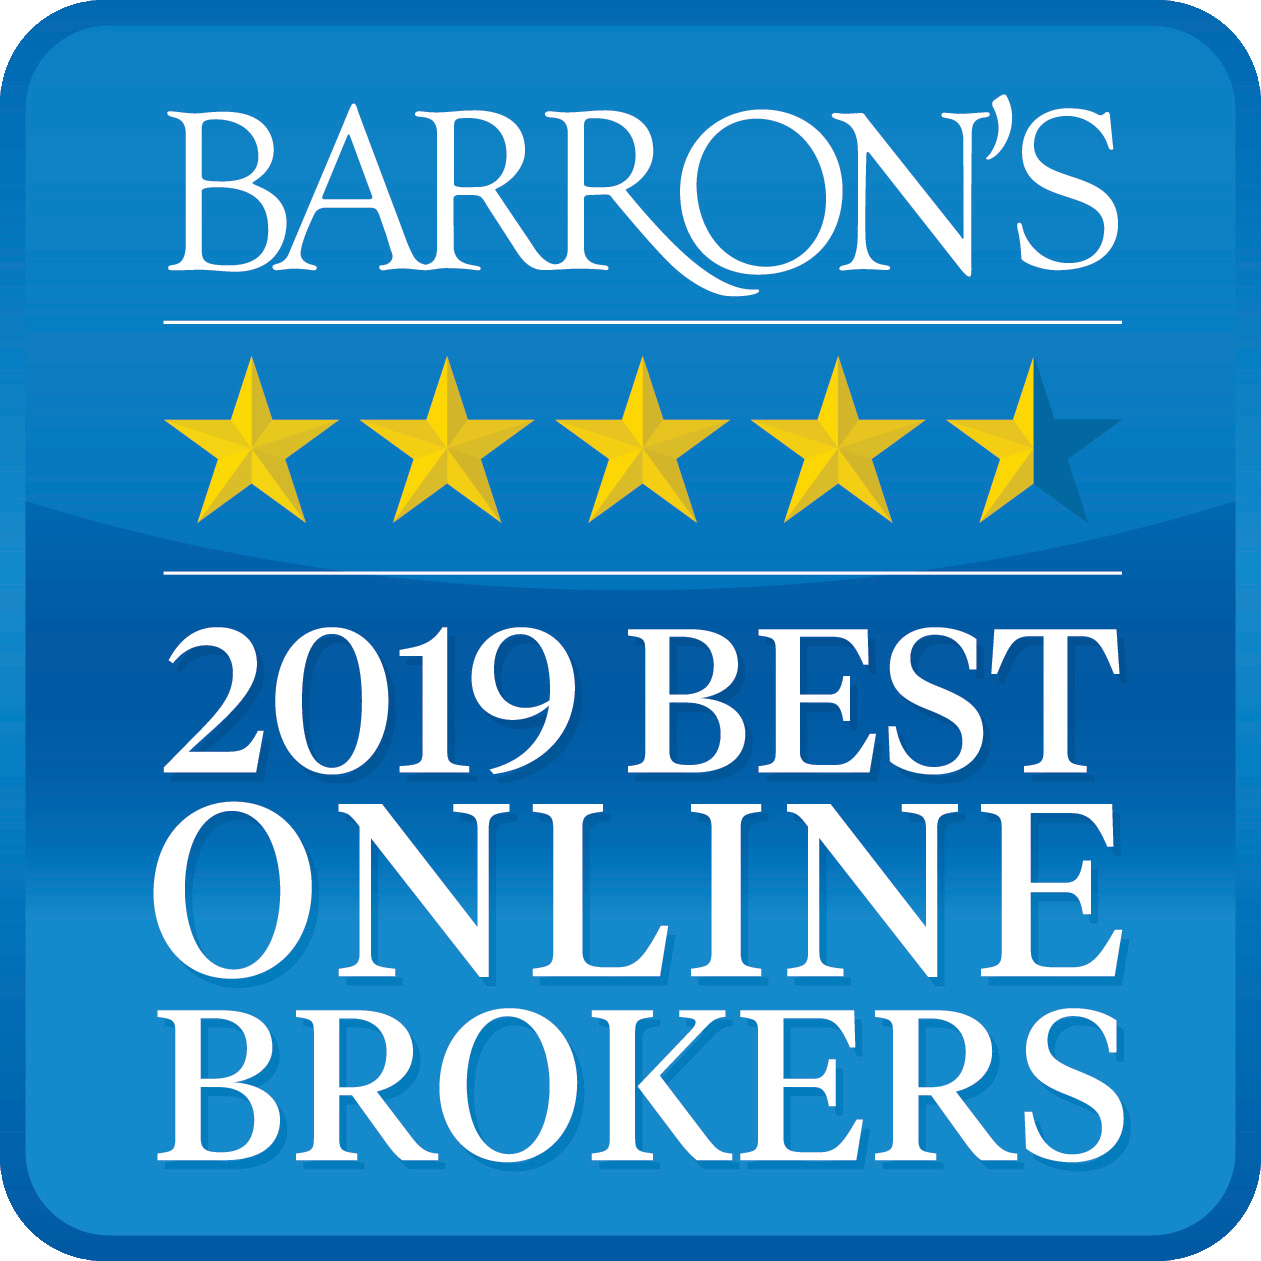 インタラクティブ・ブローカーズはバロンズ誌2019年度「ベスト・オンライン・ブローカー」の評価を受けました。